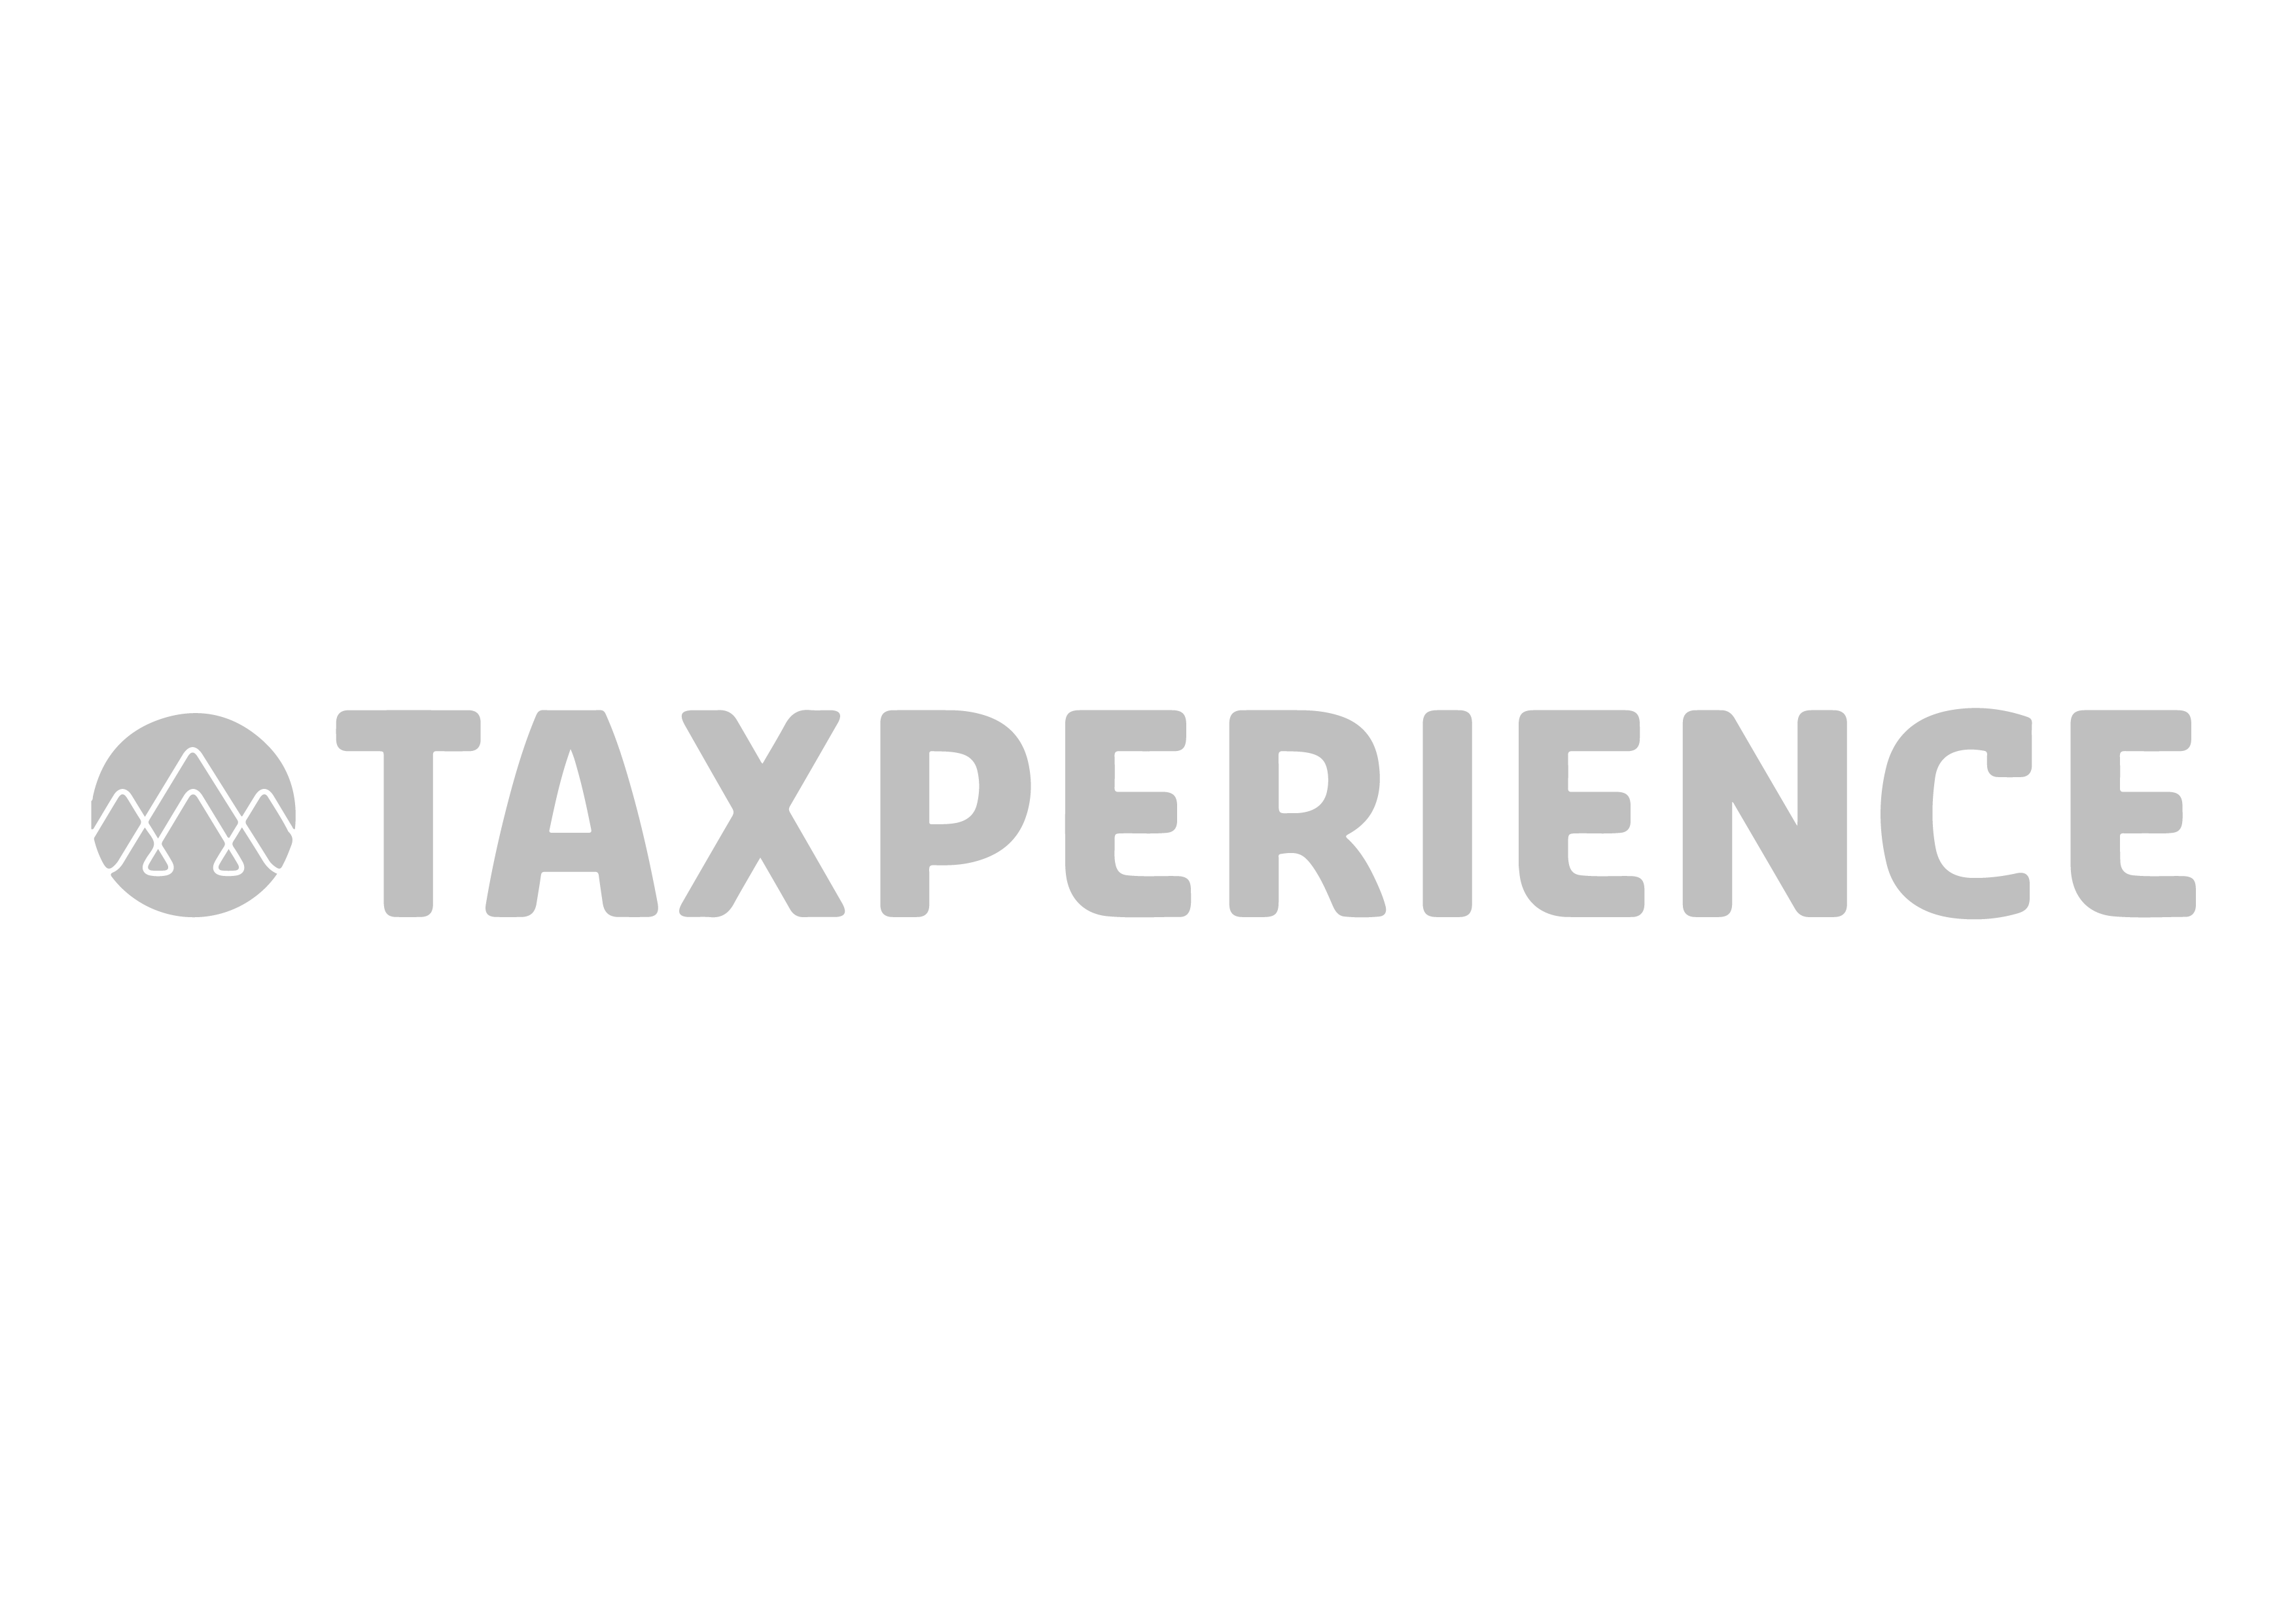 Taxperience